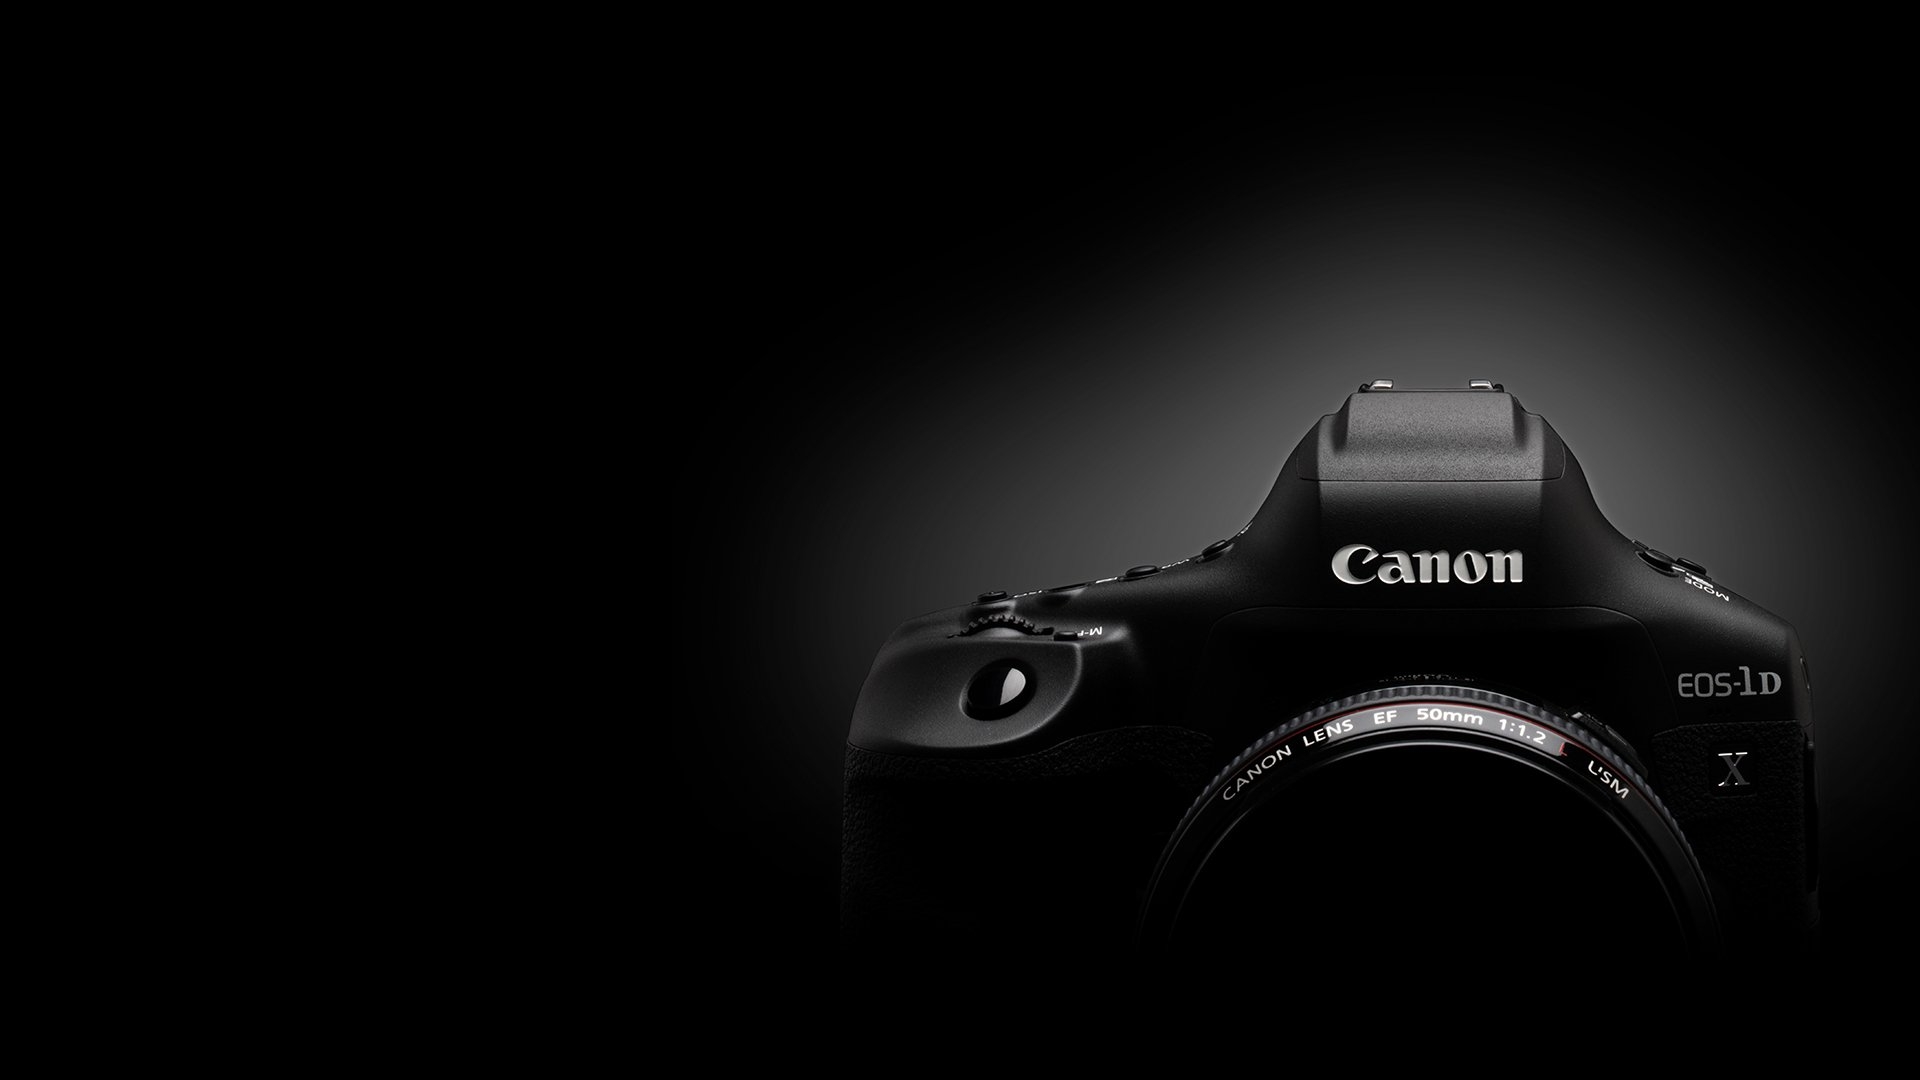 Canon Eos 1d X Mark Iii Cameras Canon Ireland